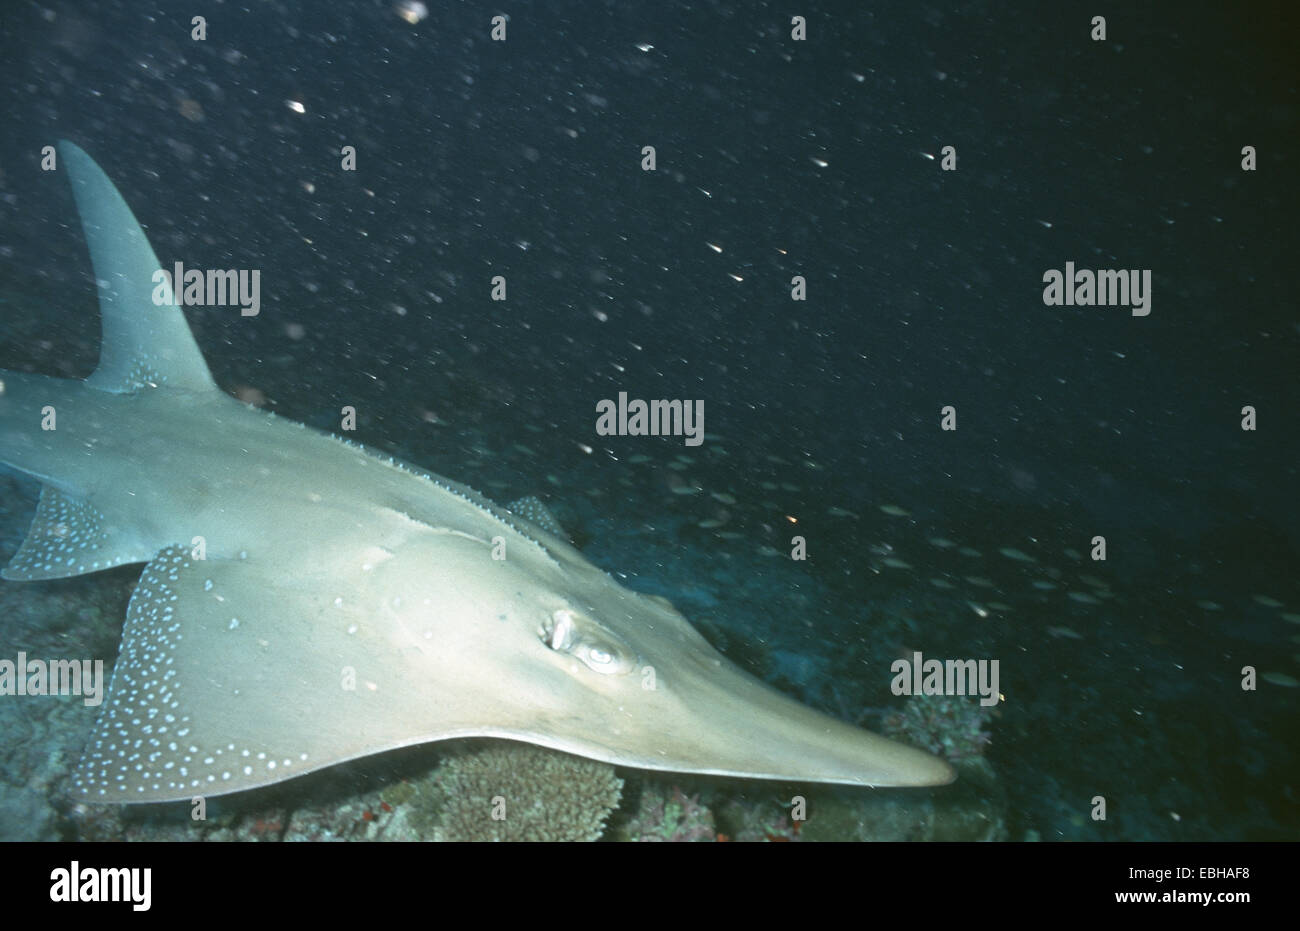 whitespotted wedgefish, spotted guitarfish, shovelnose, sand shark, giant guitarfish (Rhynchobatus djiddensis). Stock Photo